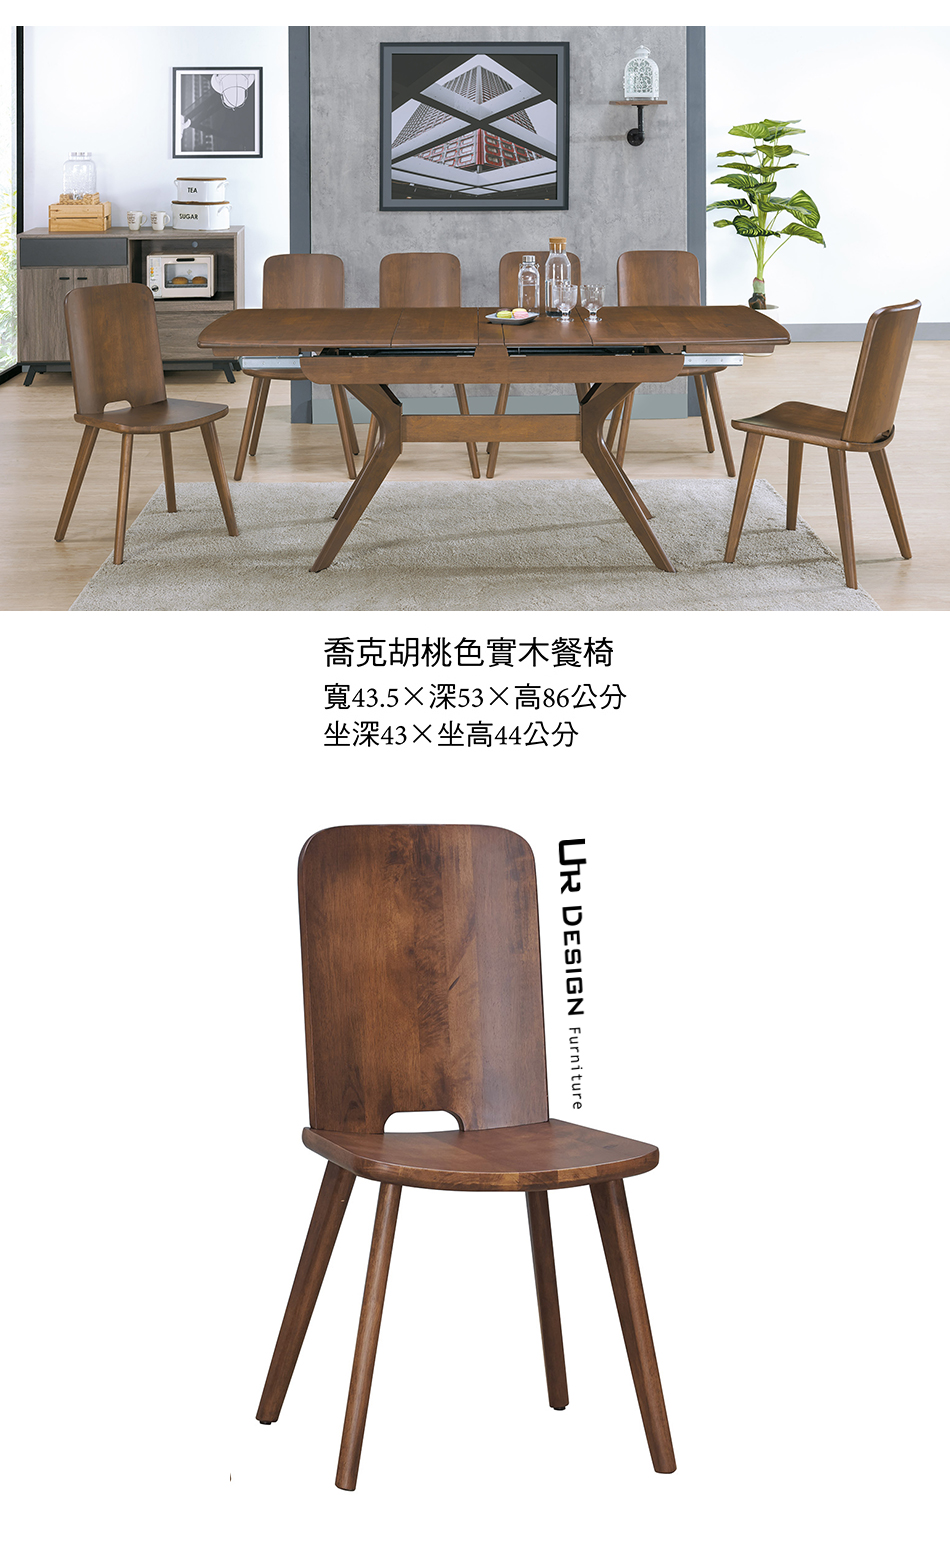 日式喬克胡桃色實木餐椅